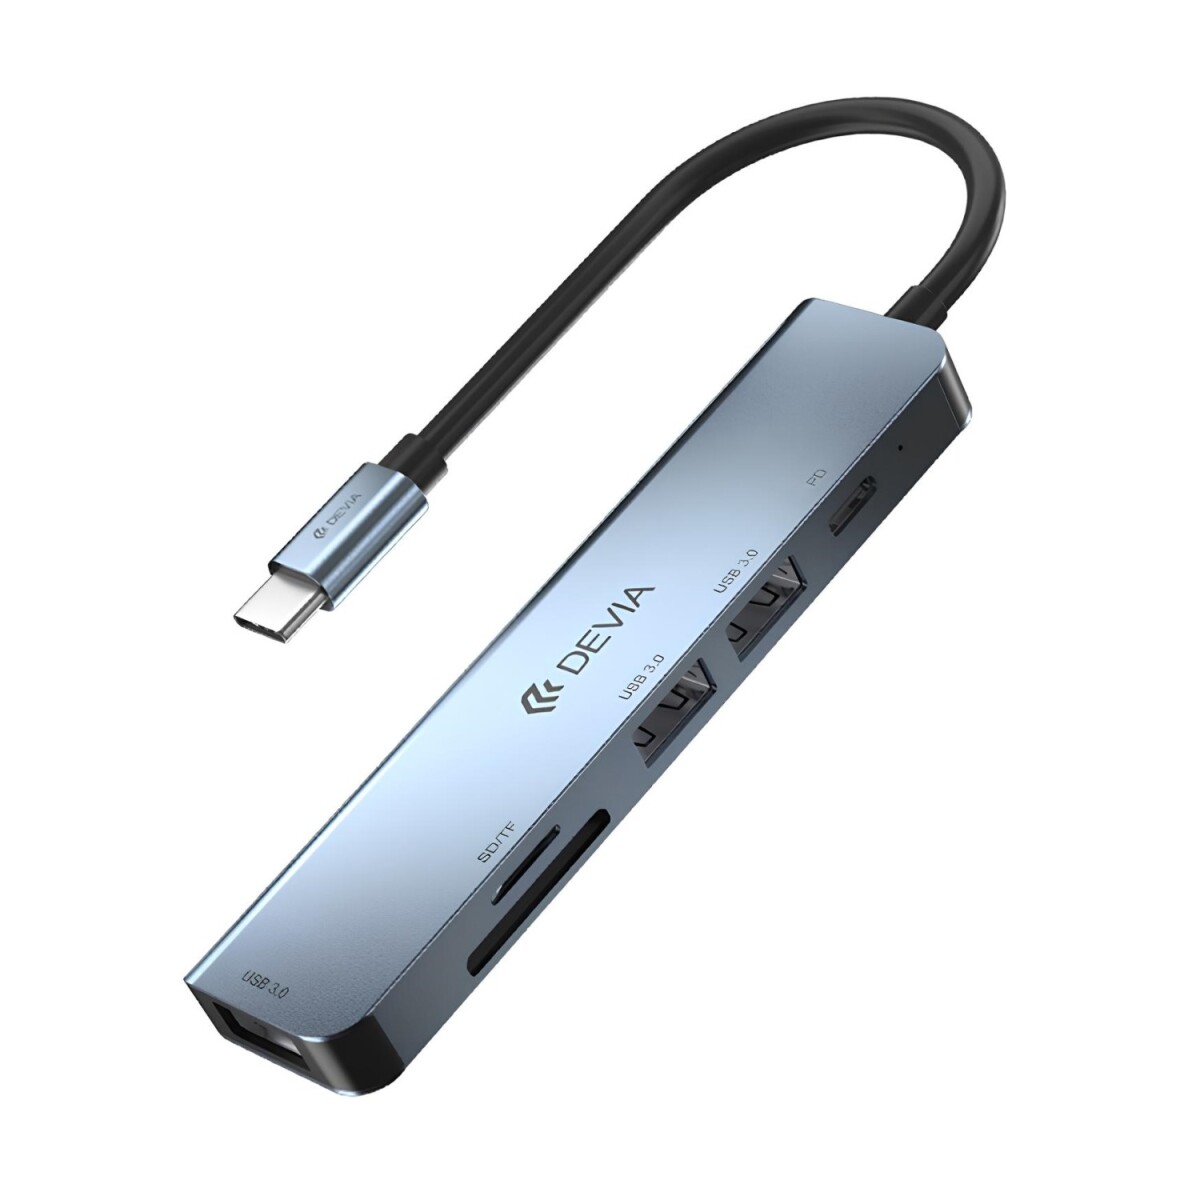 ADAPTADOR HUB 5 EN 1 USB-C A USB 3.0*3 + PD + LECTOR SD DEVIA LEOPARD (updated) - Grey 